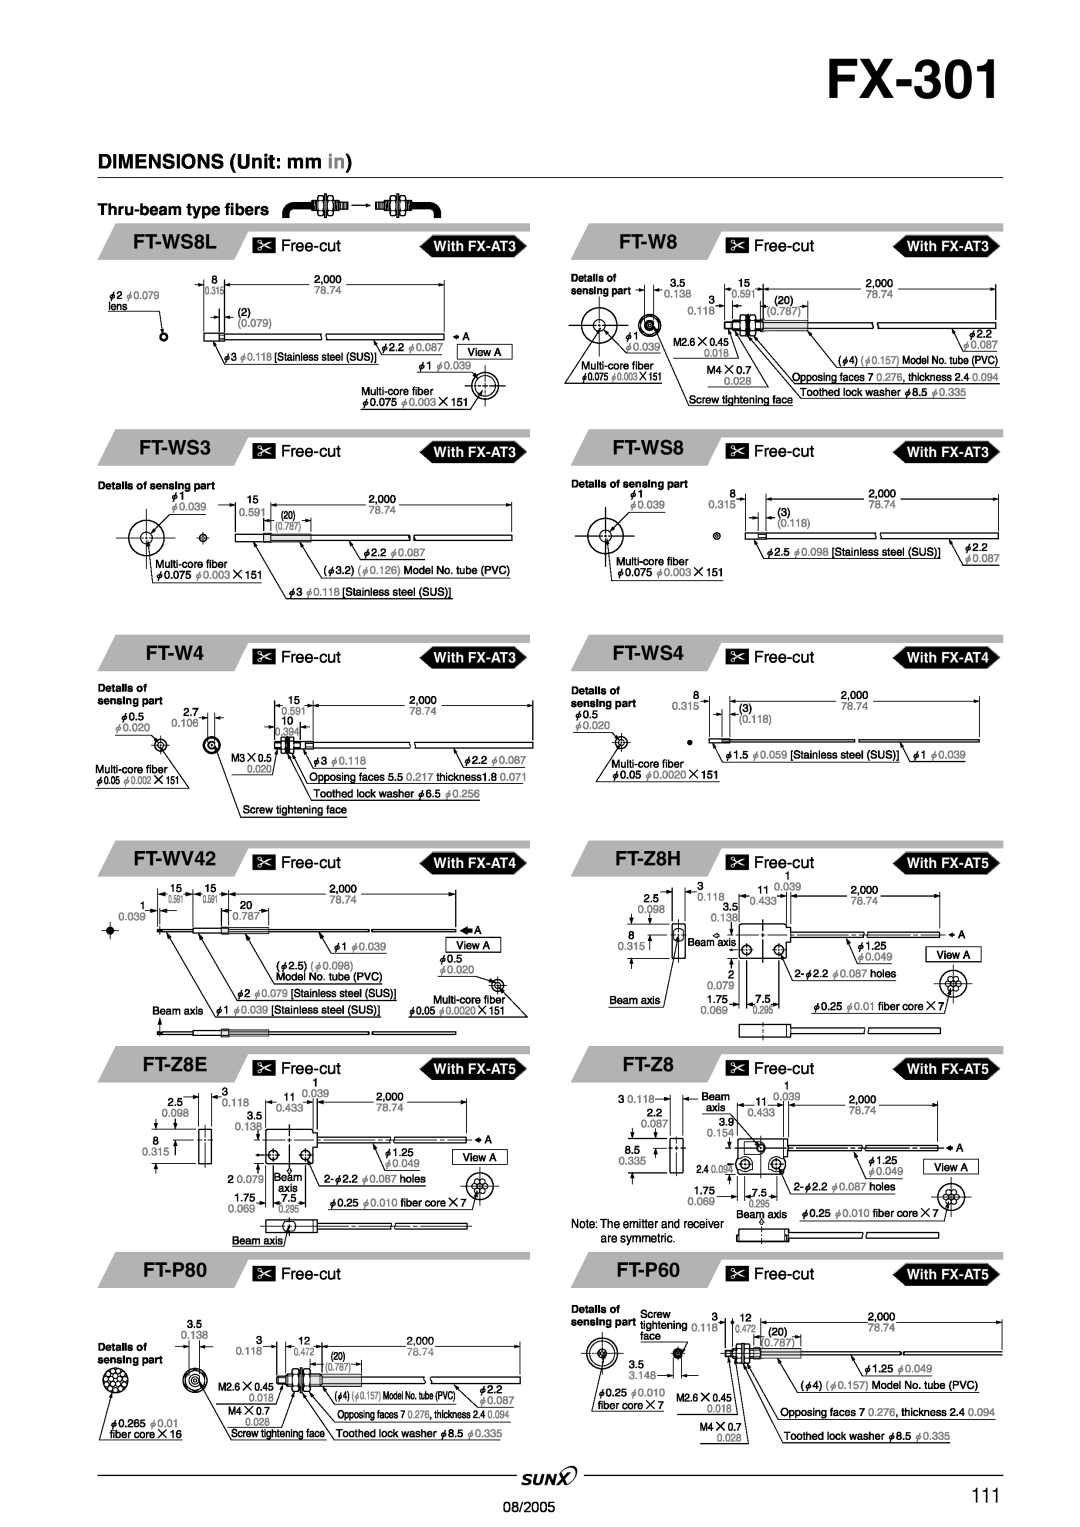 Panasonic FX-301 FT-WS8L, FT-W8, FT-WS3, FT-W4, FT-WS4, FT-WV42, FT-Z8H, FT-Z8E, FT-P60, DIMENSIONS Unit: mm in, FT-P80 